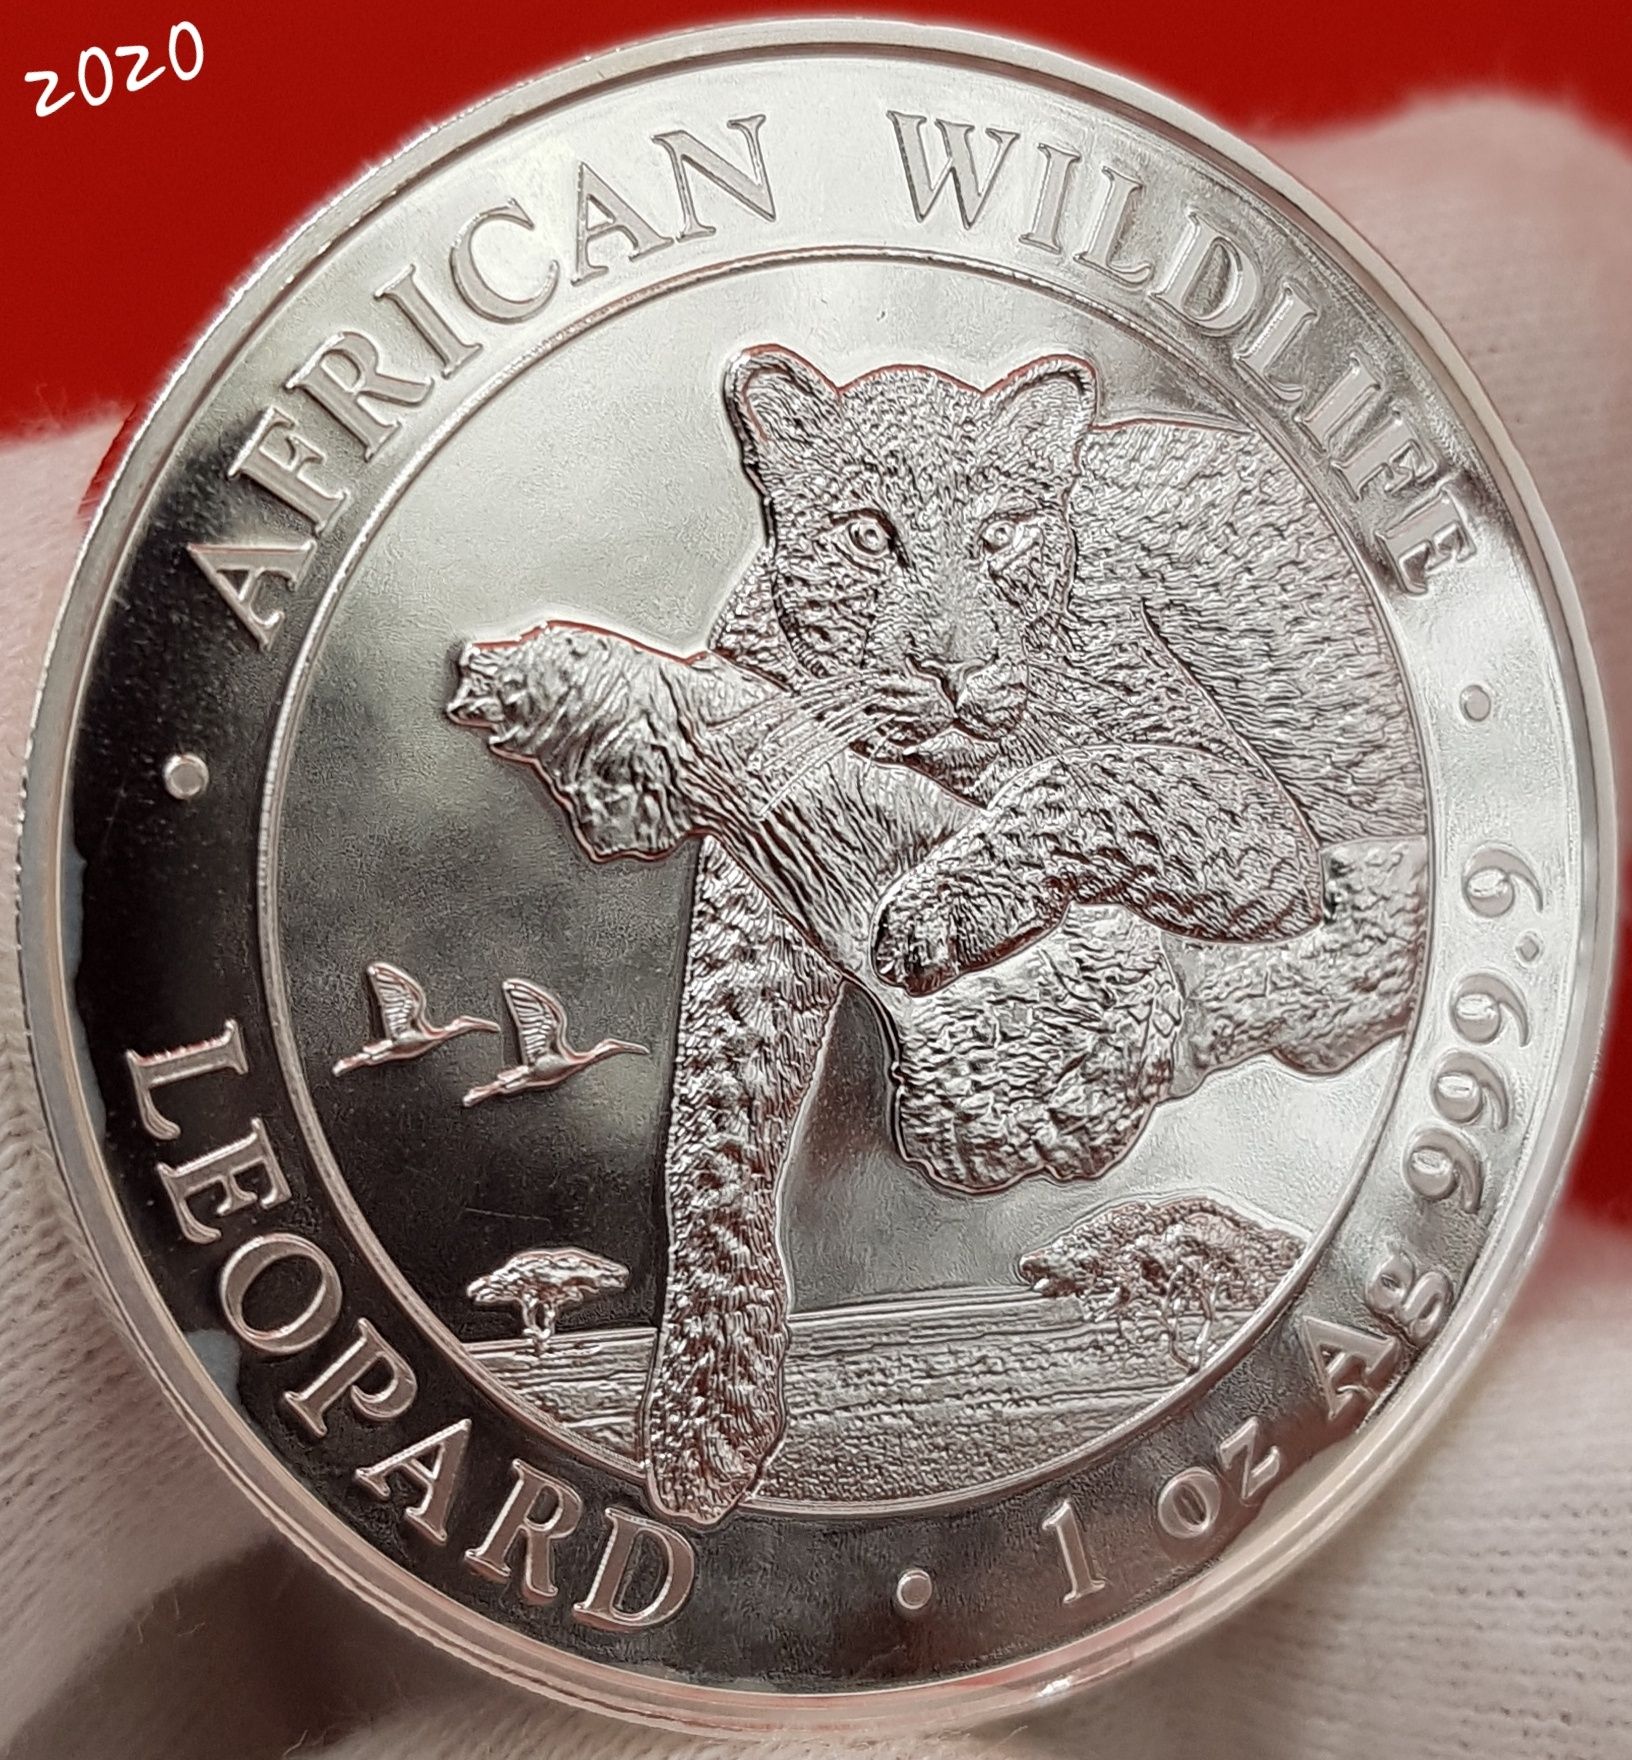 Somalia Leopardul TOATA monede argint lingou 999